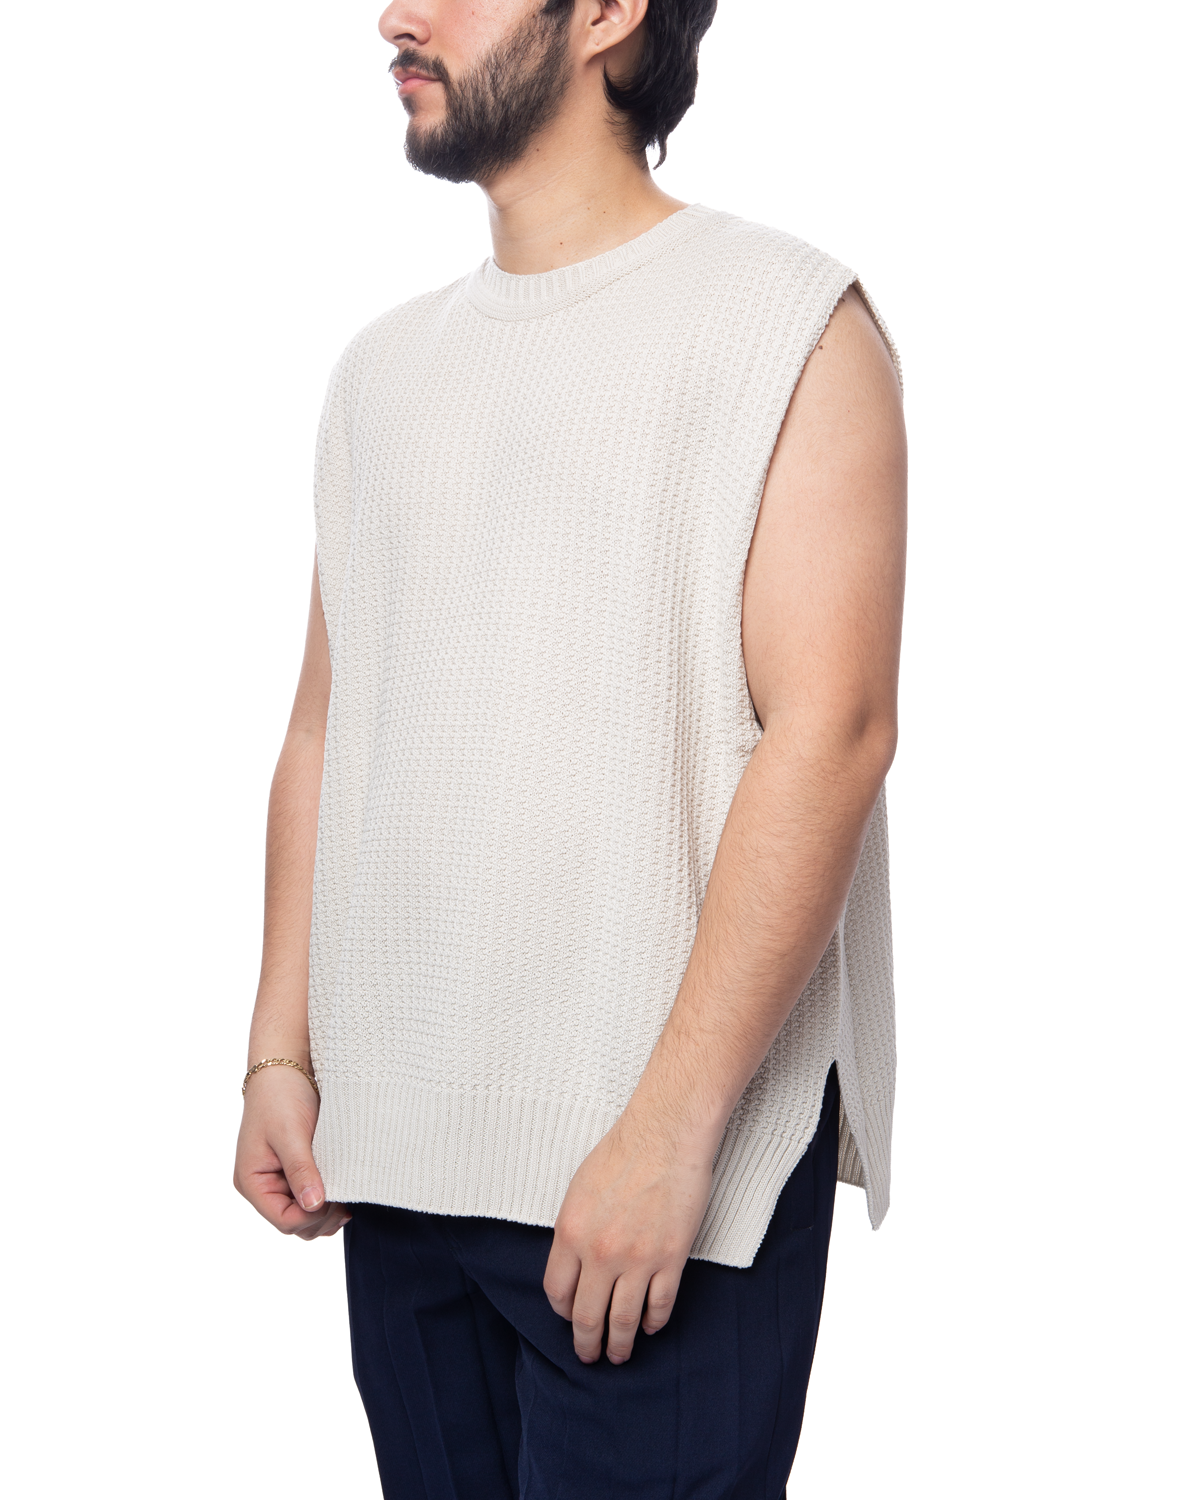 Common Knit Vest White (no.1)